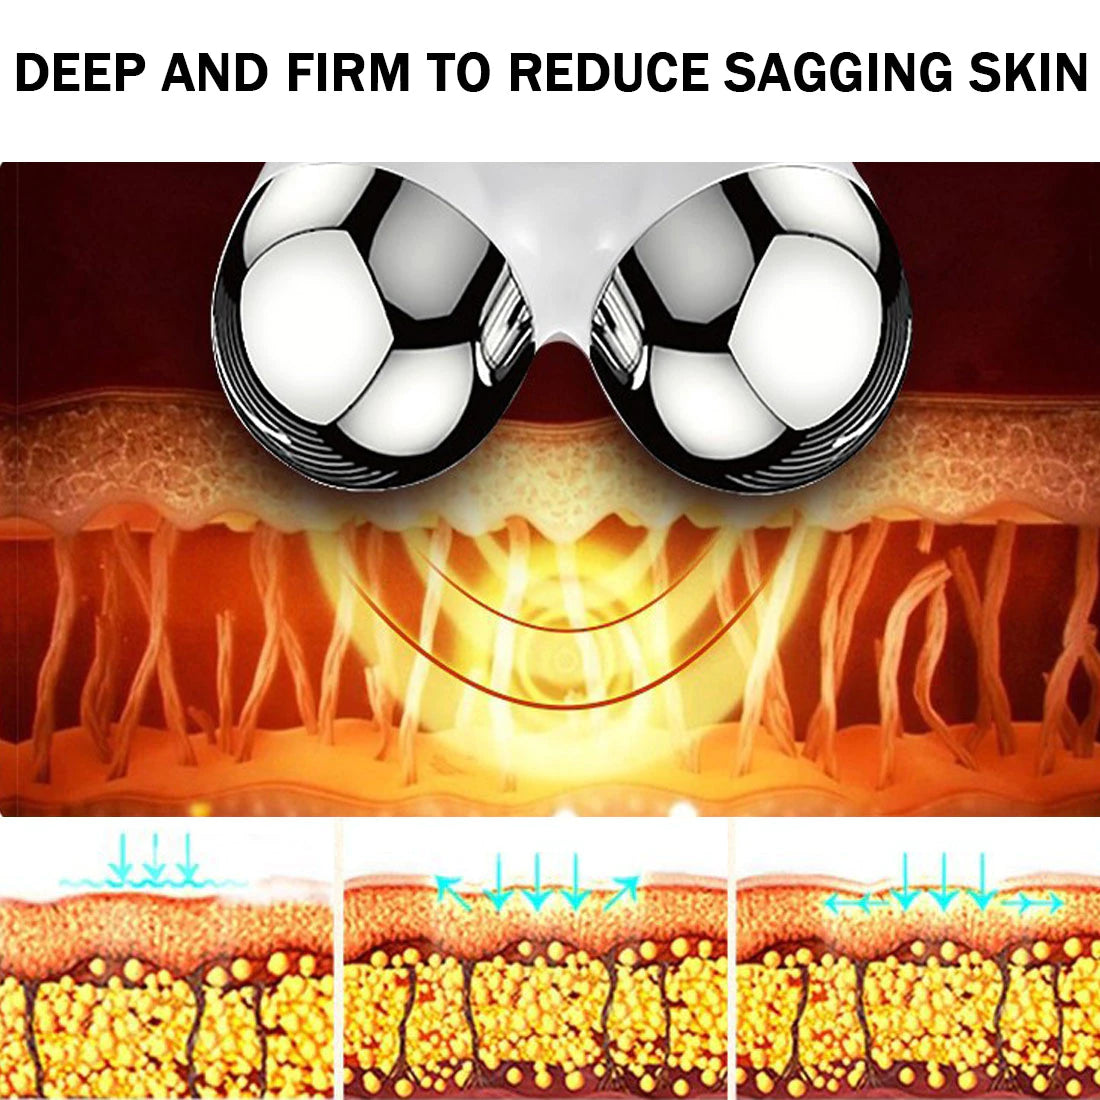 3D EMS Microcurrent Facial Roller Massager